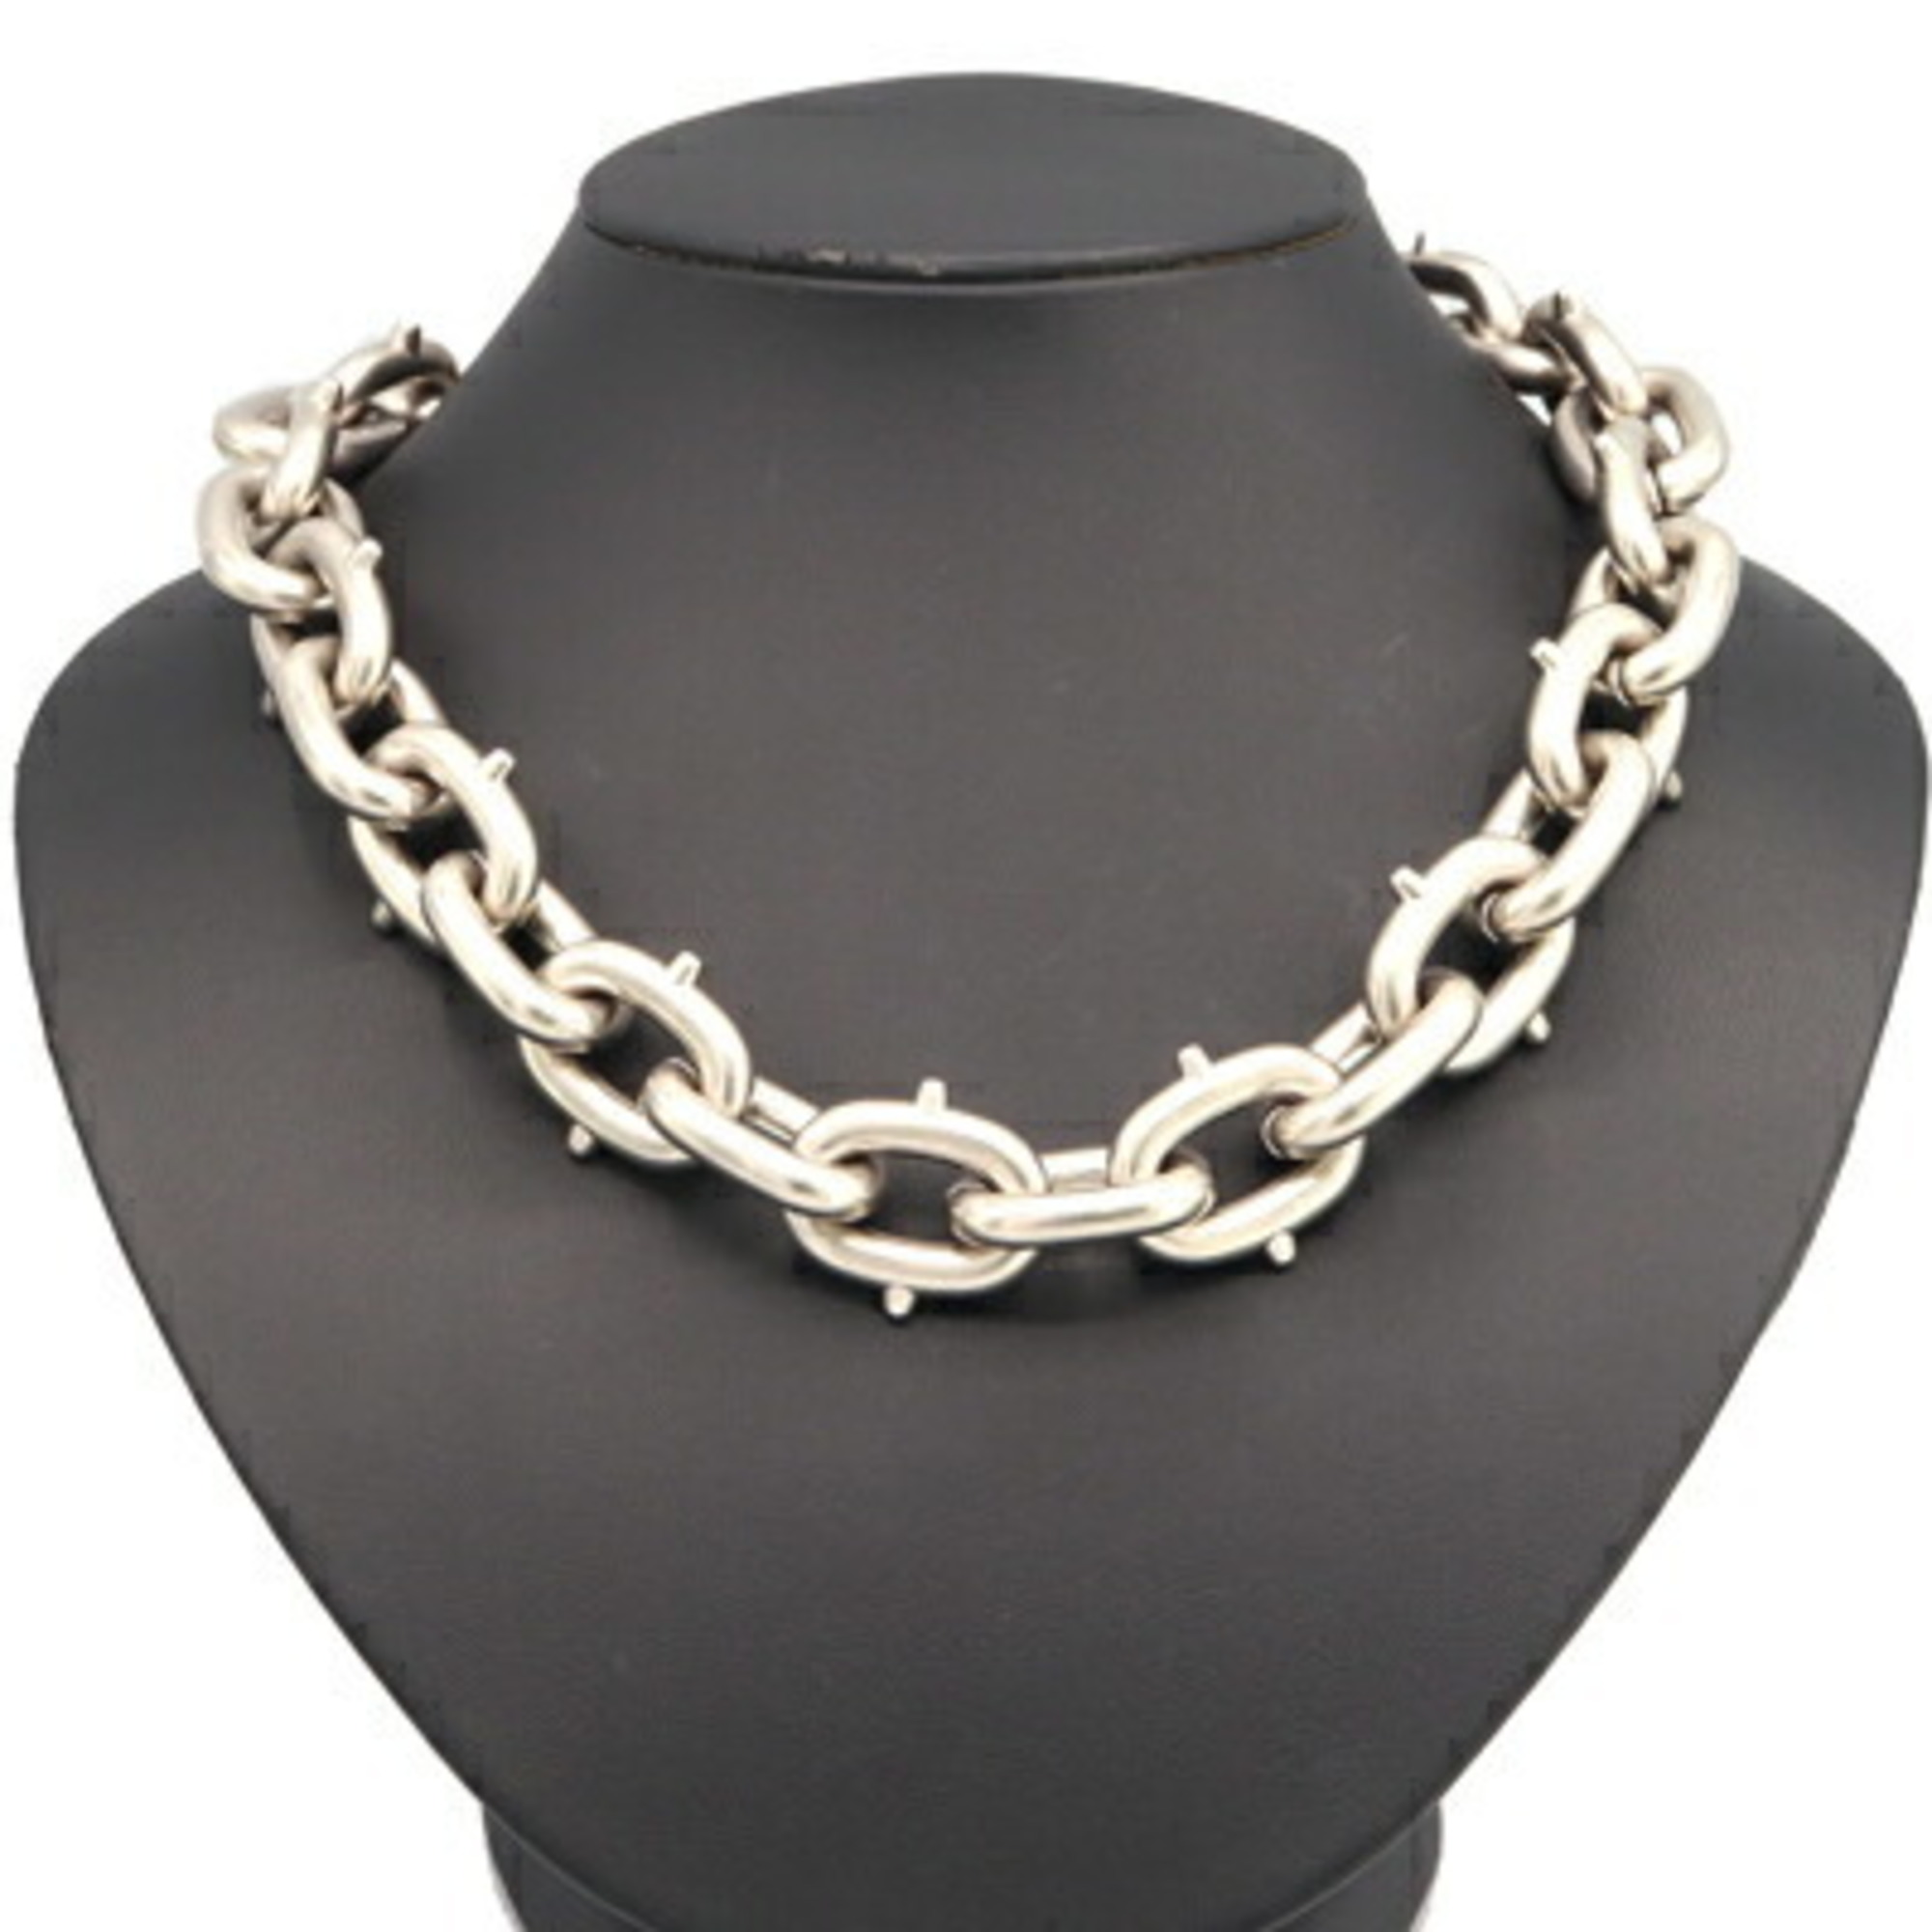 Prada Necklace 1JC576 Matte Silver Metal Pendant Chain Choker PRADA